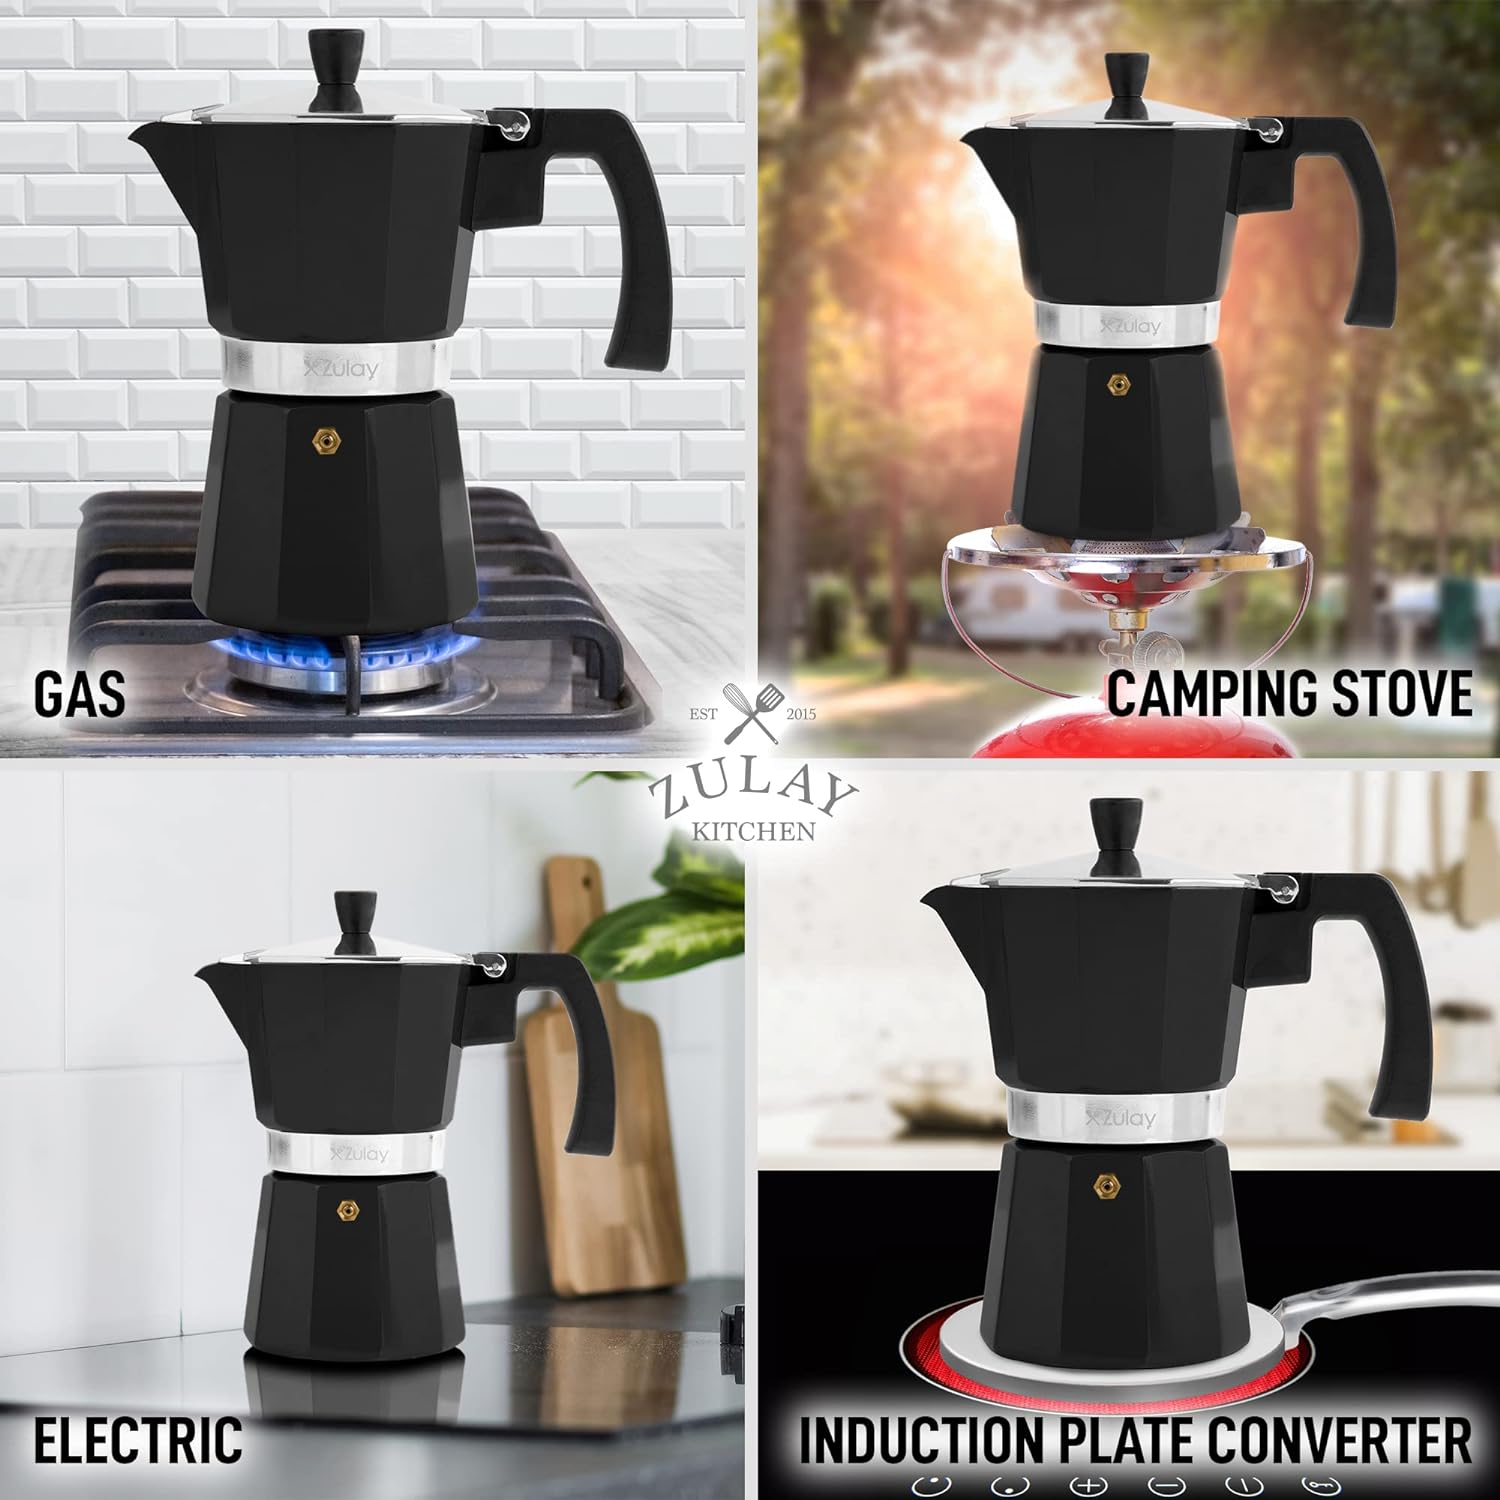 Stovetop Espresso Cup Moka Pot - 12 Cup